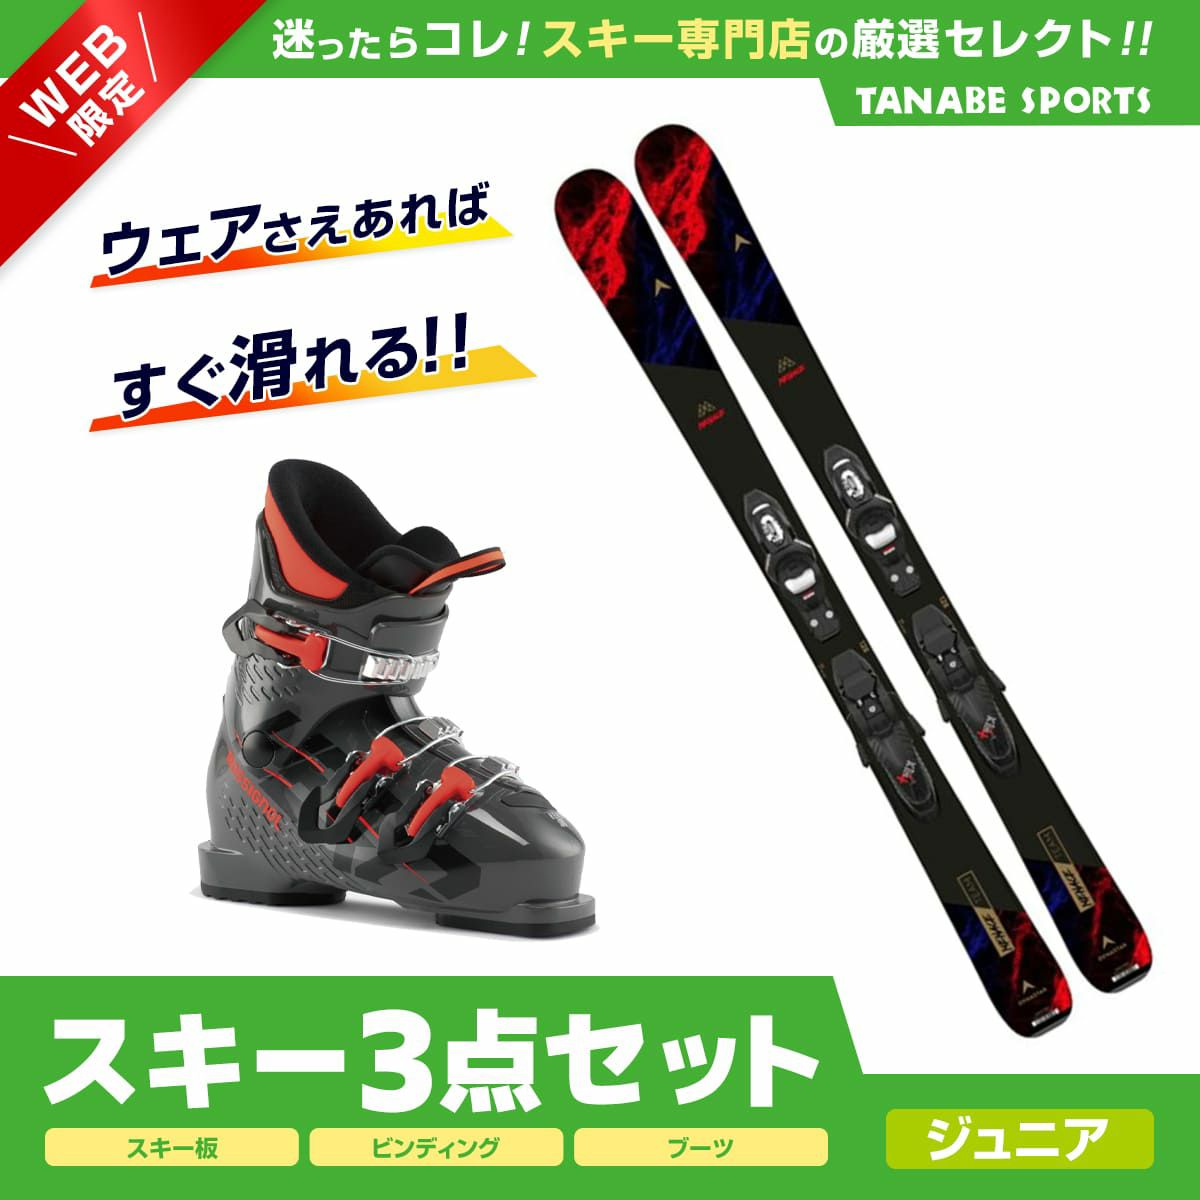 子ども用 スキーセット(板116cm、ブーツ21-22cm、ストック) - スキー